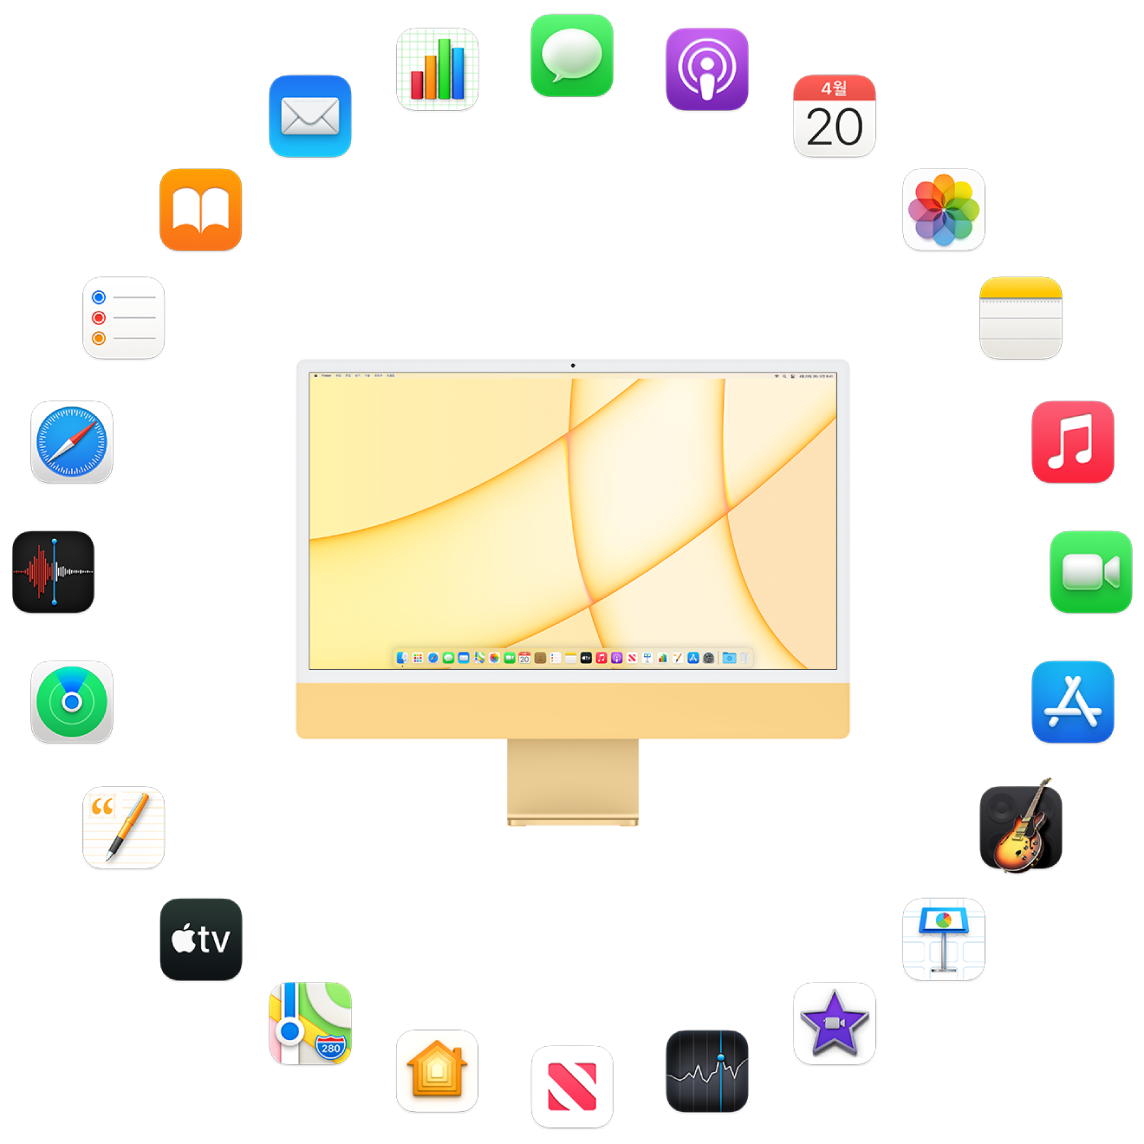 다음 섹션에서 설명하려는 내장 앱의 아이콘으로 둘러싸여 있는 iMac.